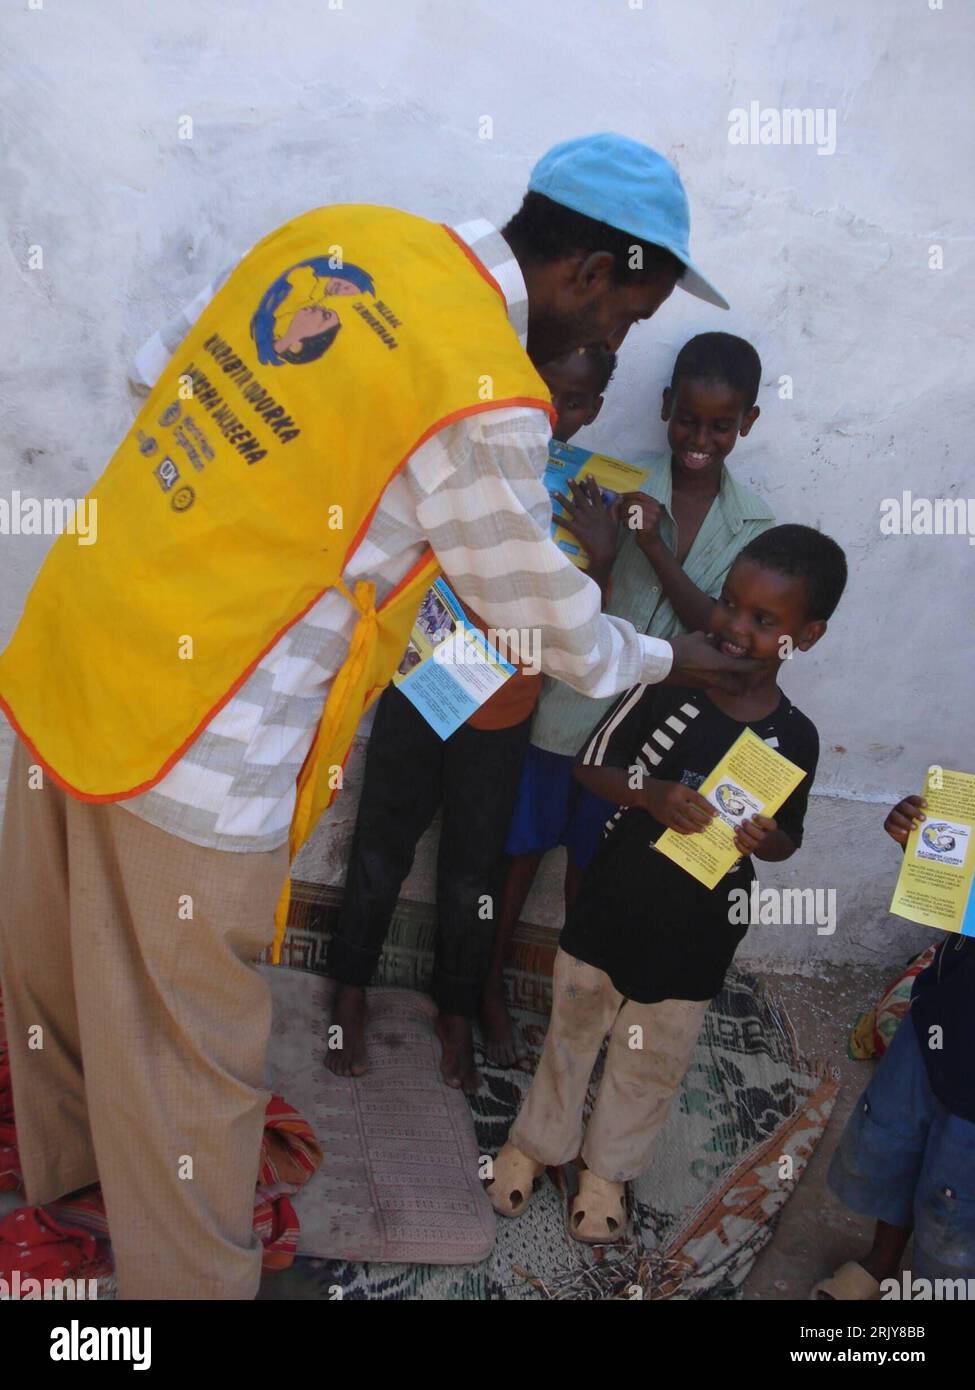 Bildnummer: 52471277  Datum: 26.03.2008  Copyright: imago/Xinhua Abdullahi Hassan Korweyne und Kinder werben in Mogadischu mit Flyern für Polio-Vorsorge - Somalia PUBLICATIONxNOTxINxCHN, Personen; 2008, Mogadishu, Somalia, Kind, Kinder, Aktion, Vorsorge, Kinderlähmung, Vorbeugung, Impfung, Handzettel, Aufklärung, Junge, Jungen, Kleinkind, Kleinkinder, Prävention; , hoch, Kbdig, Gruppenbild,  , Gesundheit, Afrika o0 Gesellschaft Stock Photo